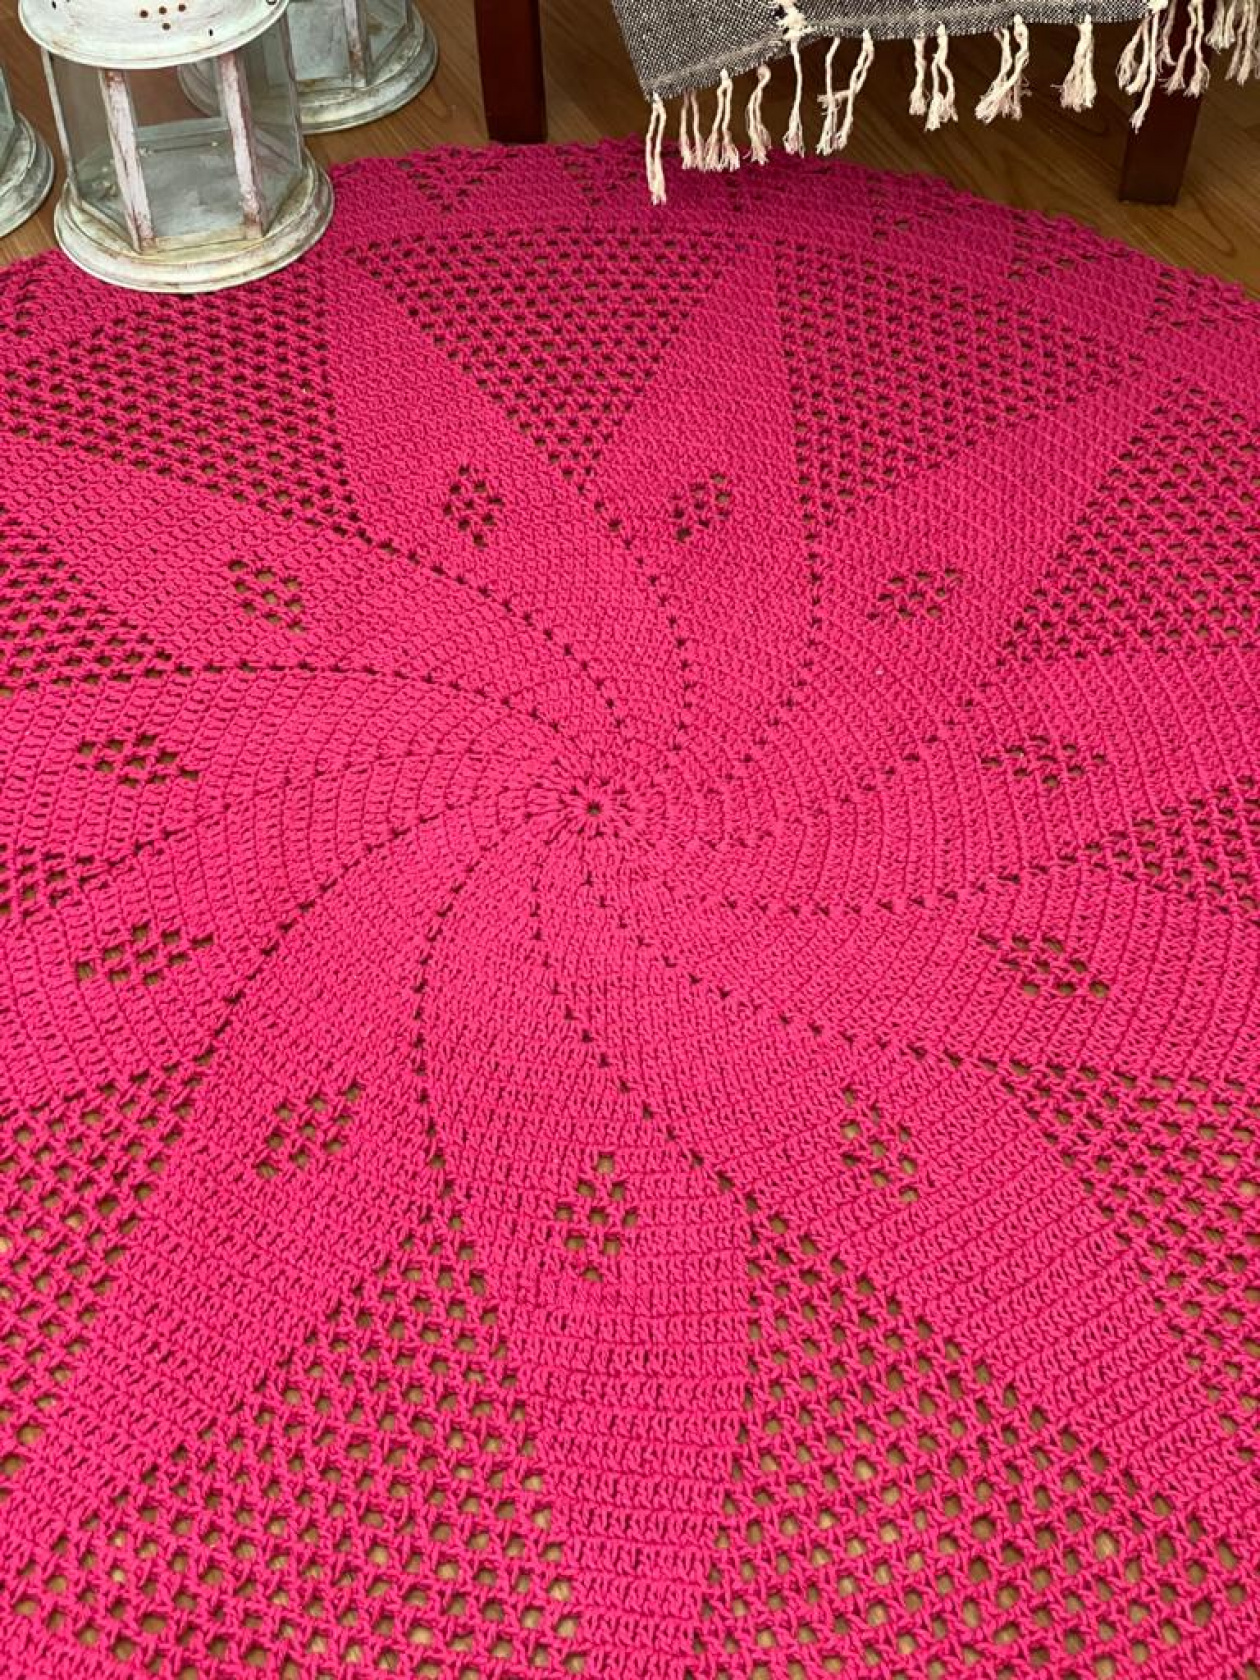 Tapetes de Crochê Redondo Rosa - Crochê Vitória